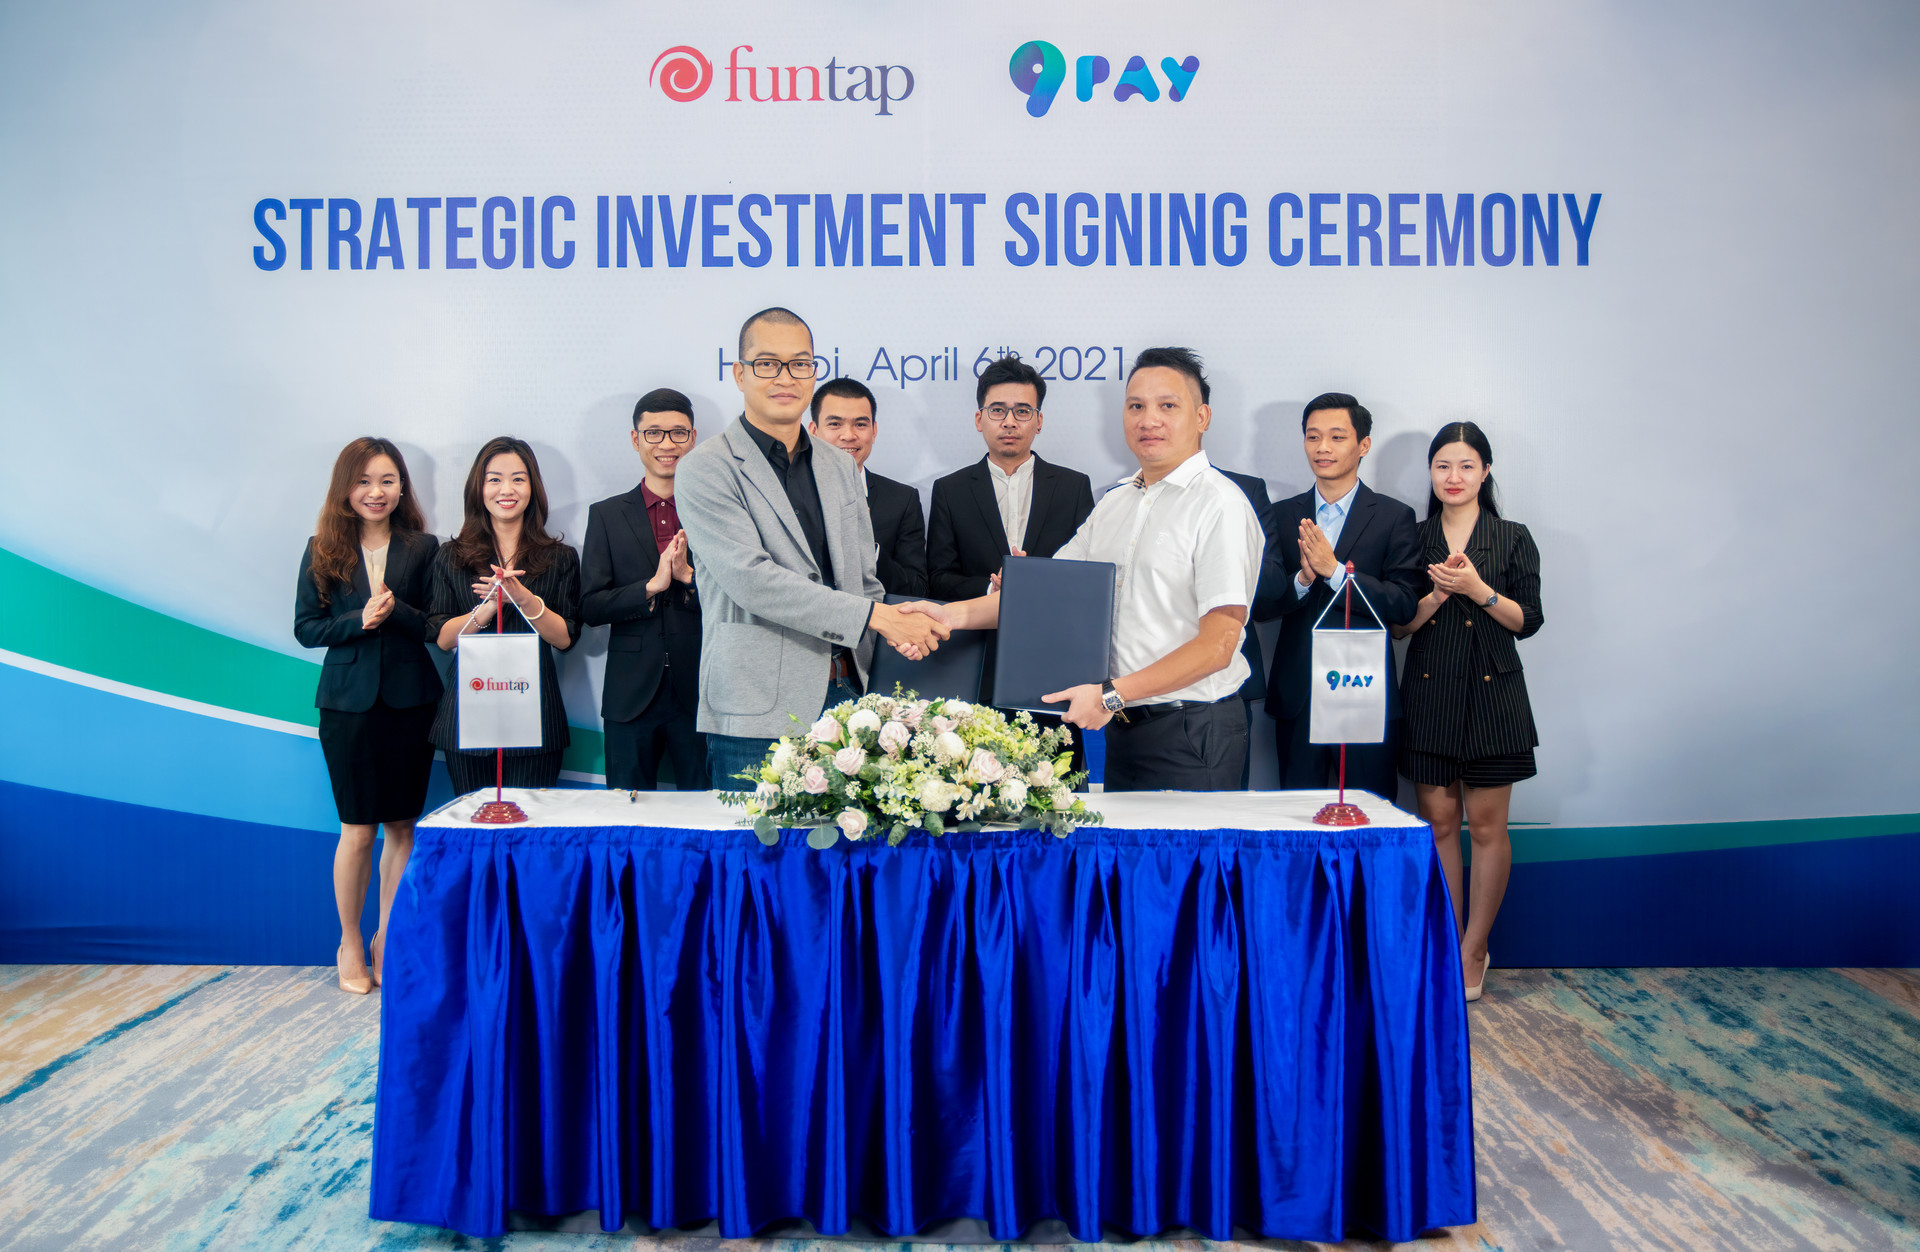 Funtap ký kết thỏa thuận đầu tư chiến lược vào 9Pay (Tháng 4/2021).